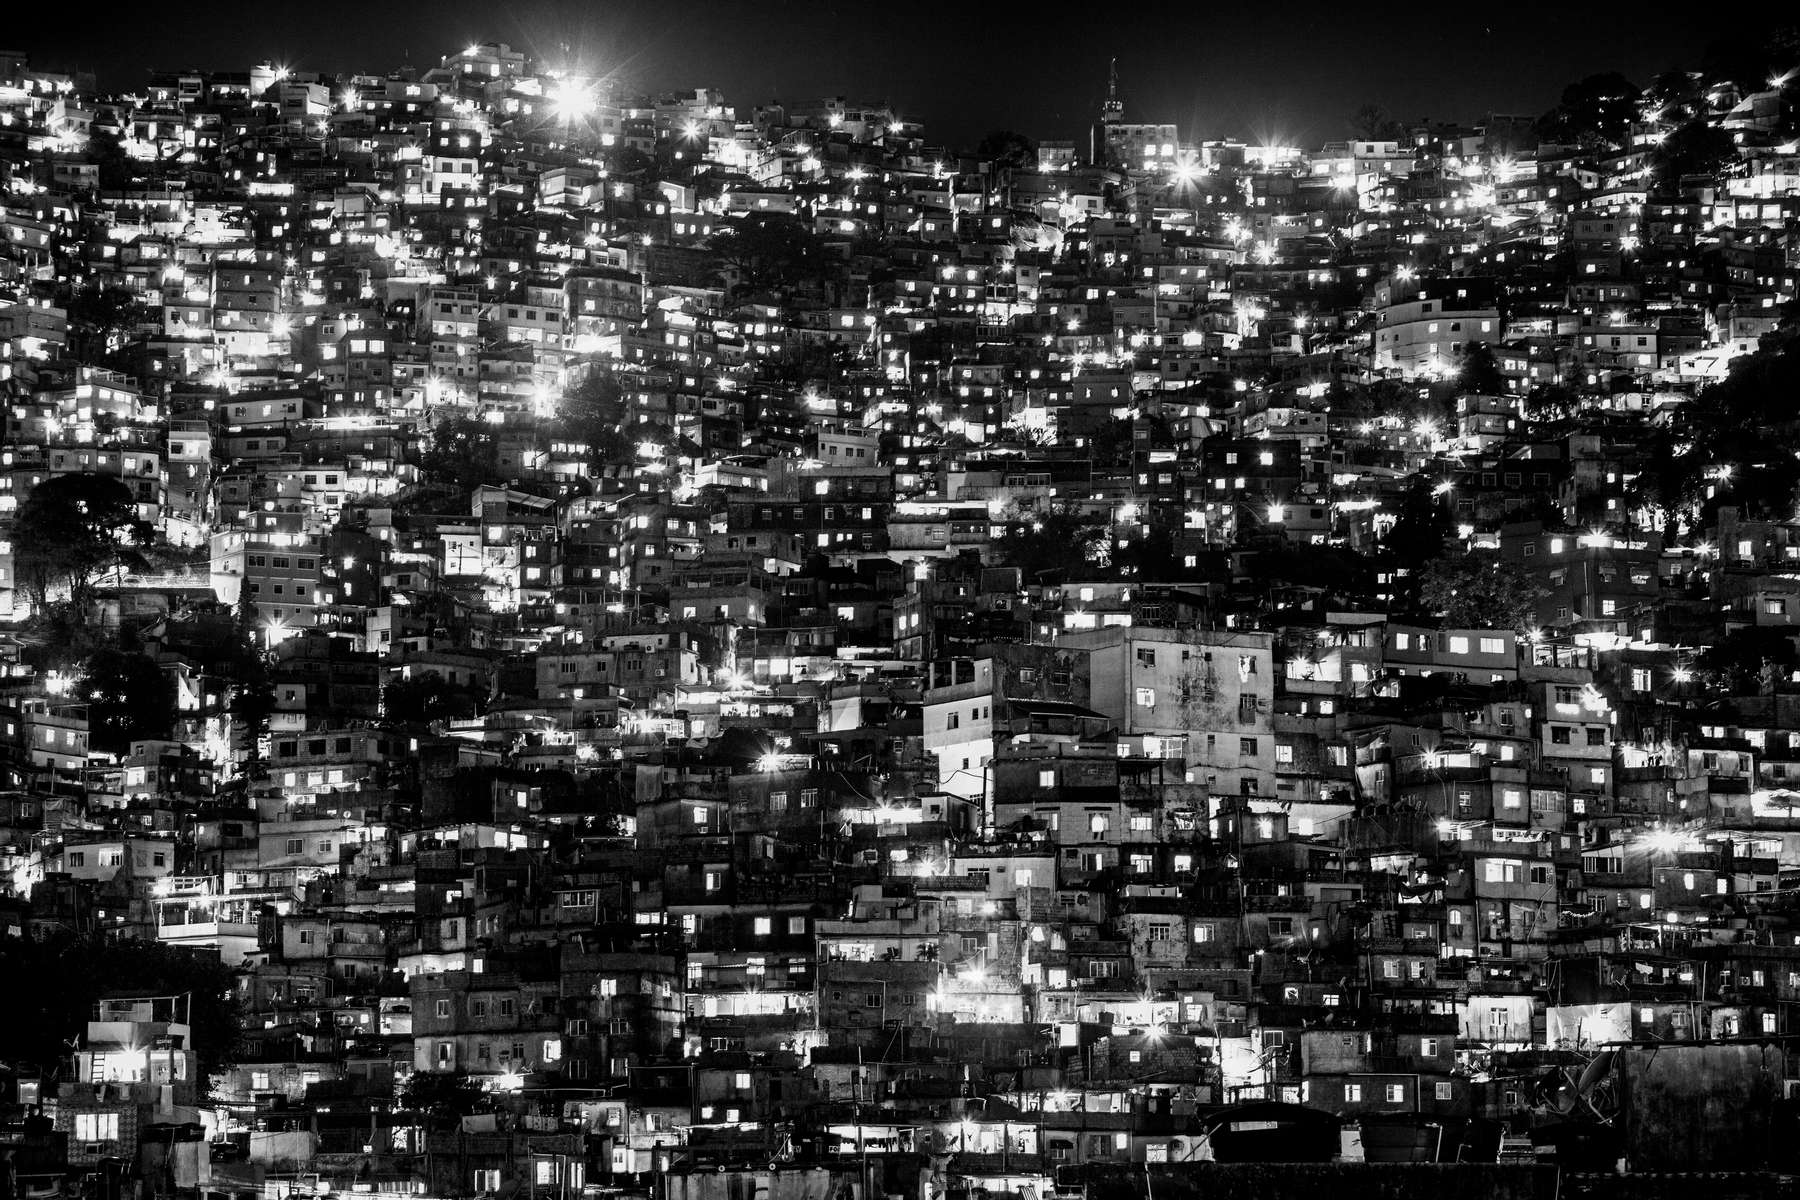 Panoramica nocturna de la favela de Rocinha, en Río de Janeiro, Brasil, 4 de diciembre de 2012.Con una población de entre 120 y 150,000 personas, Rocinha es la favela más grande de Río de Janeiro y una de las mas grandes del mundo.